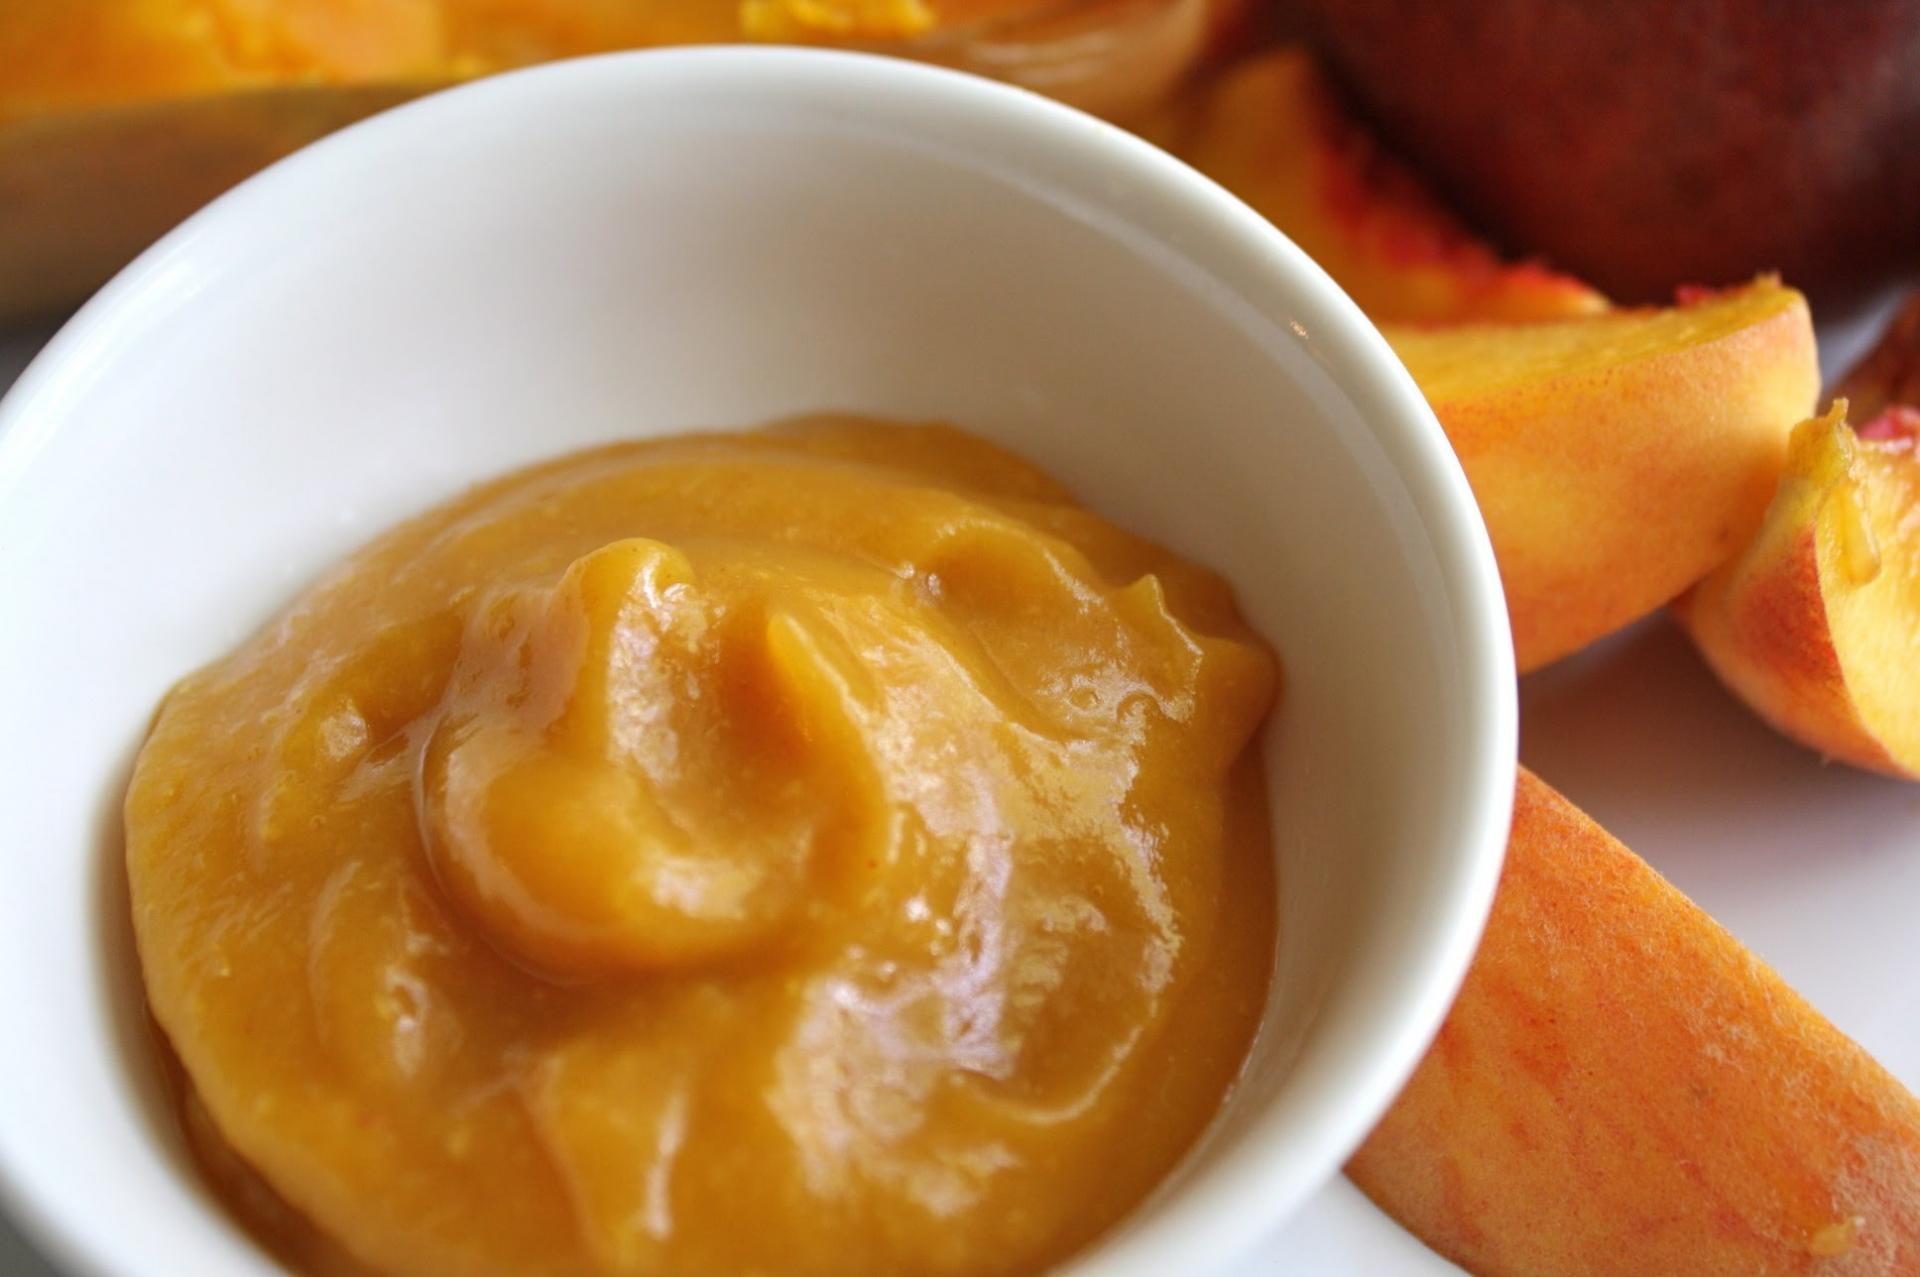 К абрикосам можно добавить яблочное, банановое или ягодное пюре